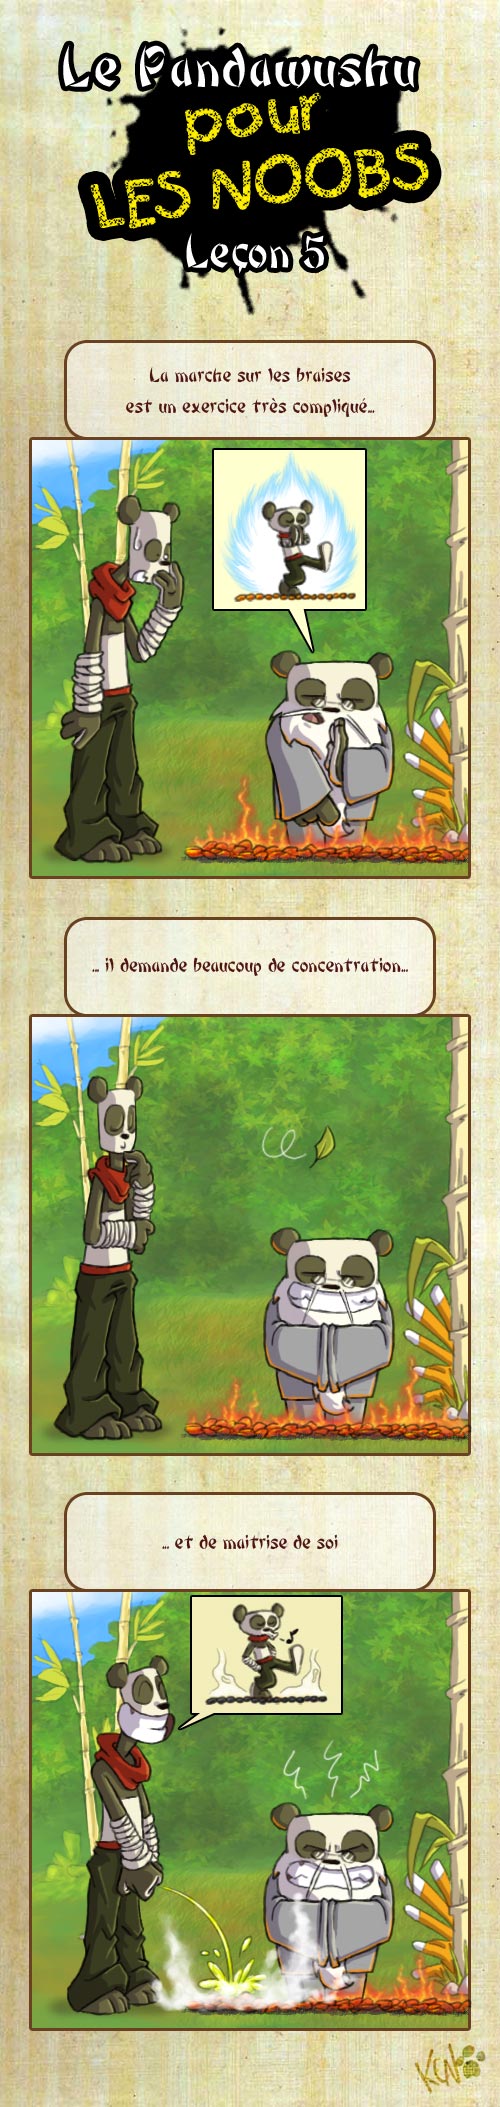 Le Pandawashu pour les noobs (partie 1) Pandaw14